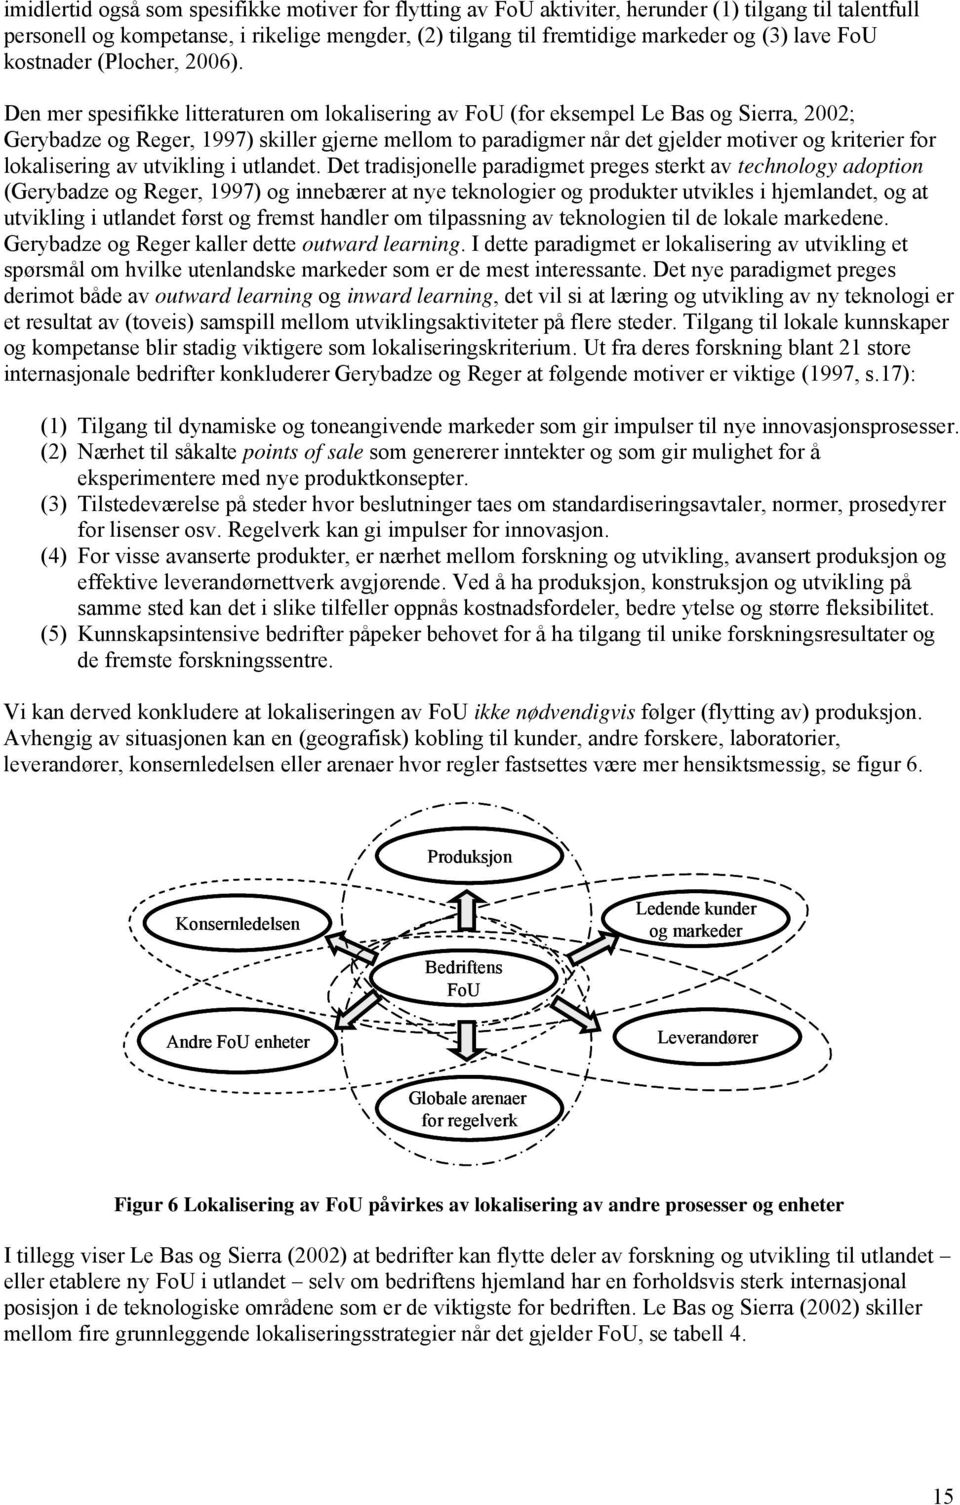 Den mer spesifikke litteraturen om lokalisering av FoU (for eksempel Le Bas og Sierra, 2002; Gerybadze og Reger, 1997) skiller gjerne mellom to paradigmer når det gjelder motiver og kriterier for